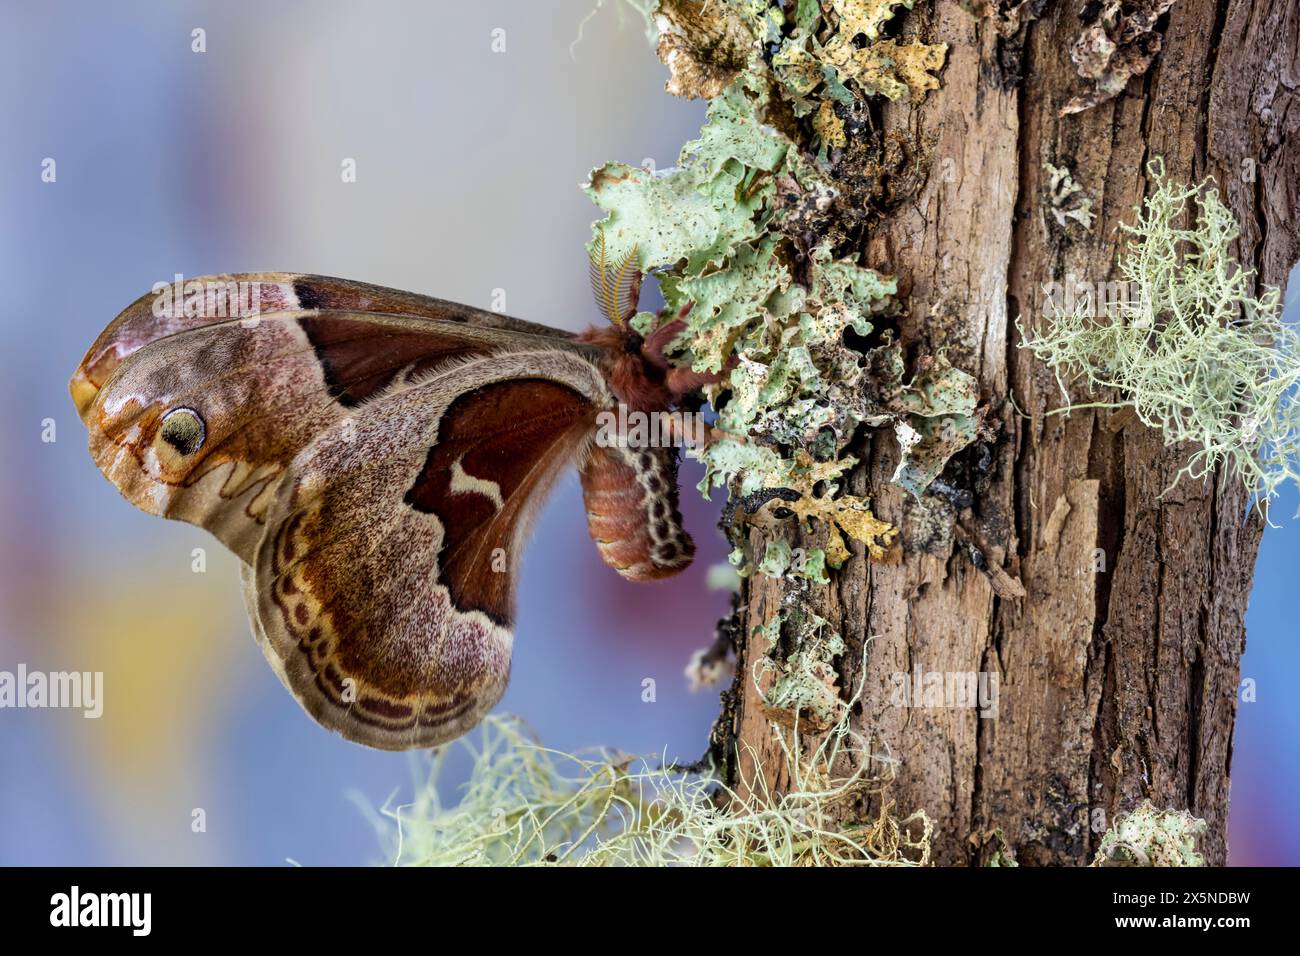 Stati Uniti, Stato di Washington, Sammamish. Prometeo femmina falena di seta su ramo coperto di lichene Foto Stock